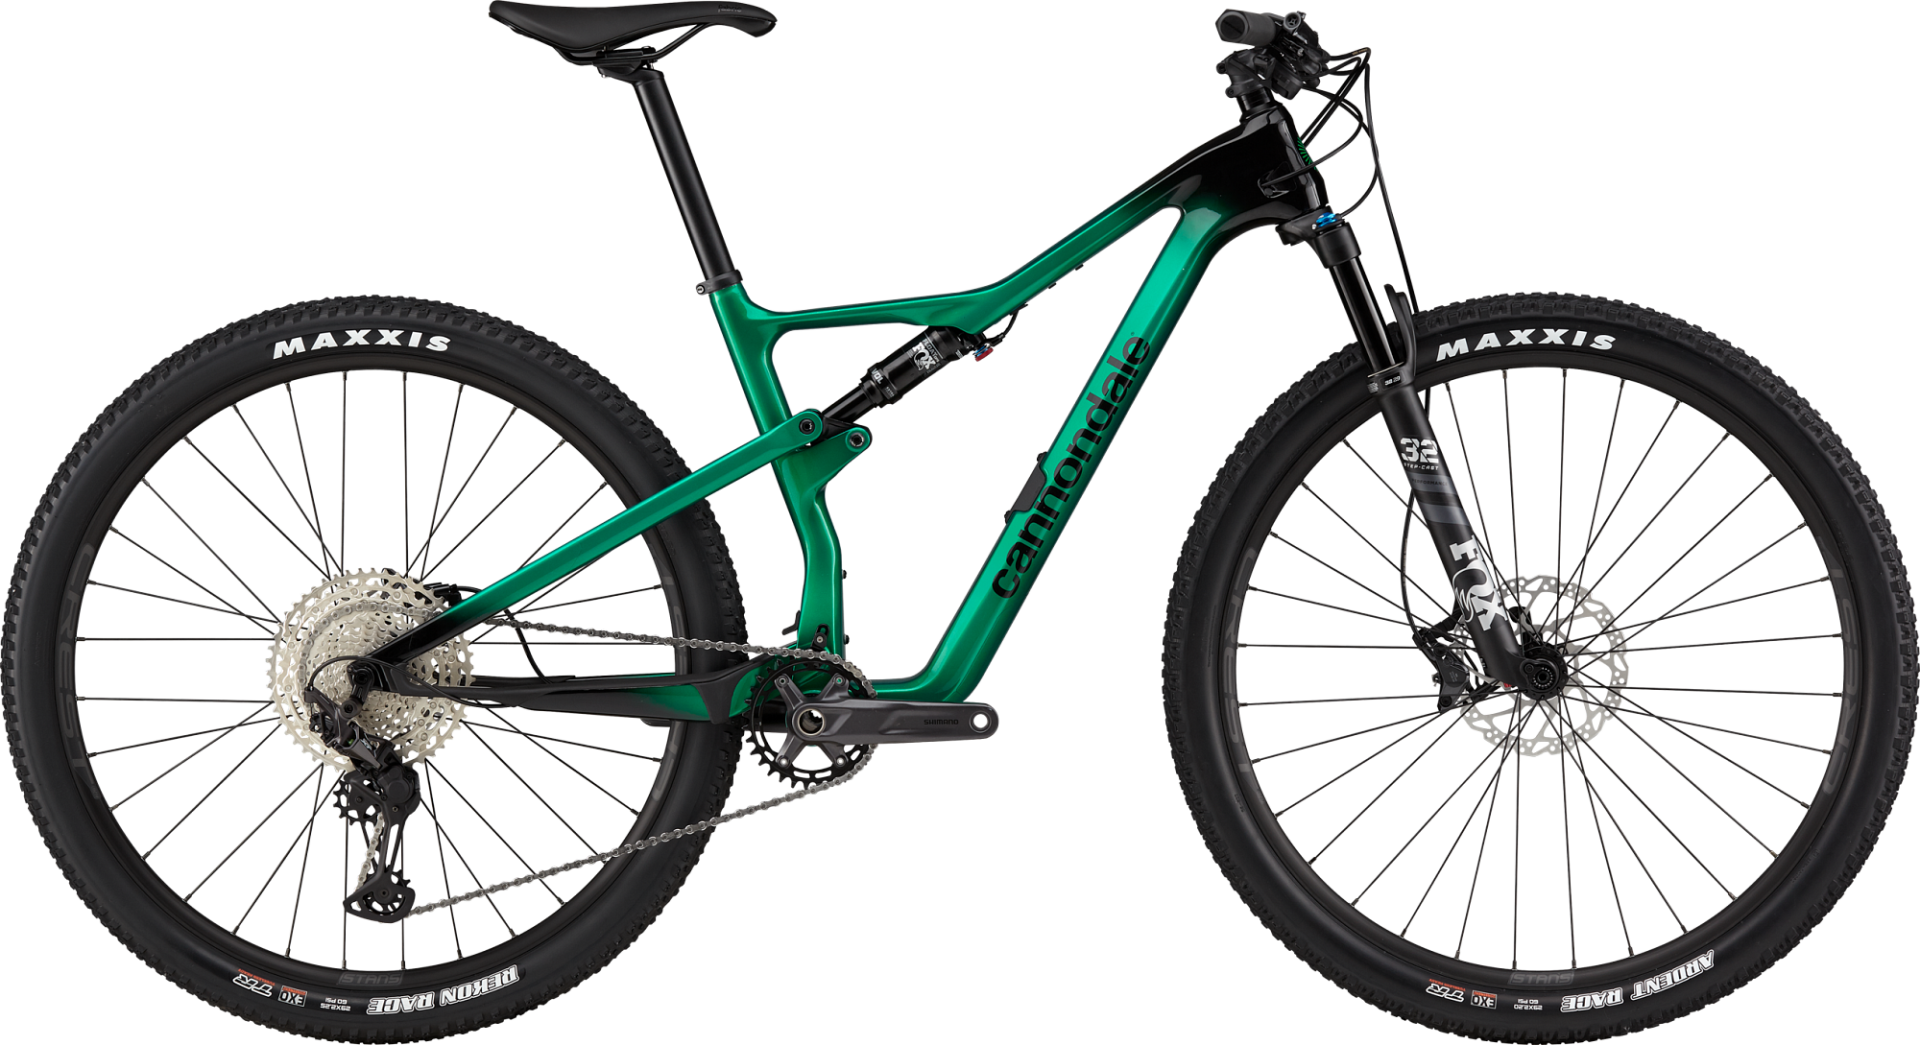 Cannondale Scalpel Carbon 4 29 Jant XC Dağ Bisikleti - Jungle Green